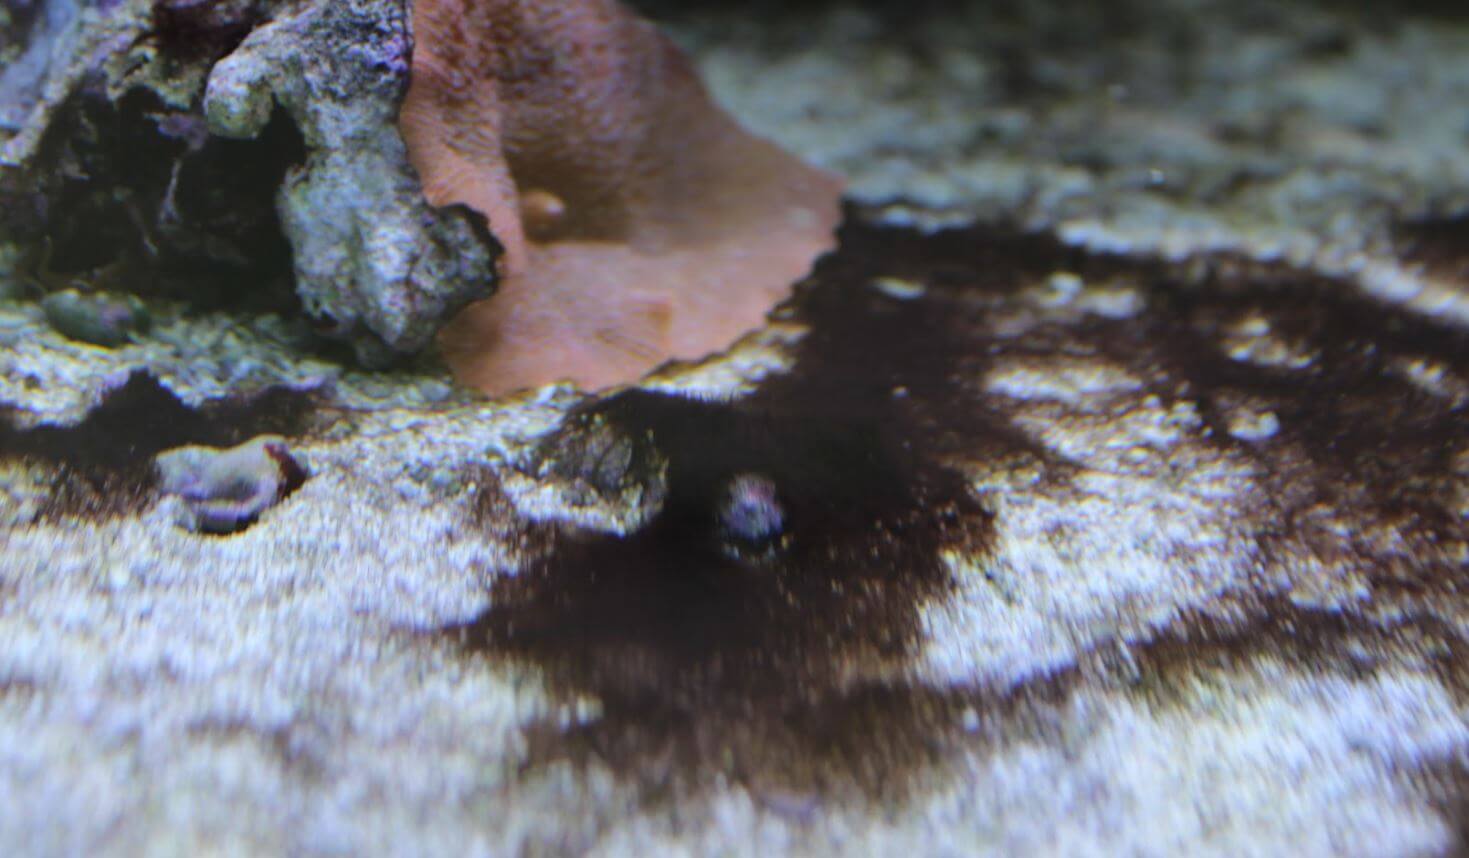 rote Schmieralgen beseitigen durch Bodengrund im Meerwasseraquarium richtig reinigen 